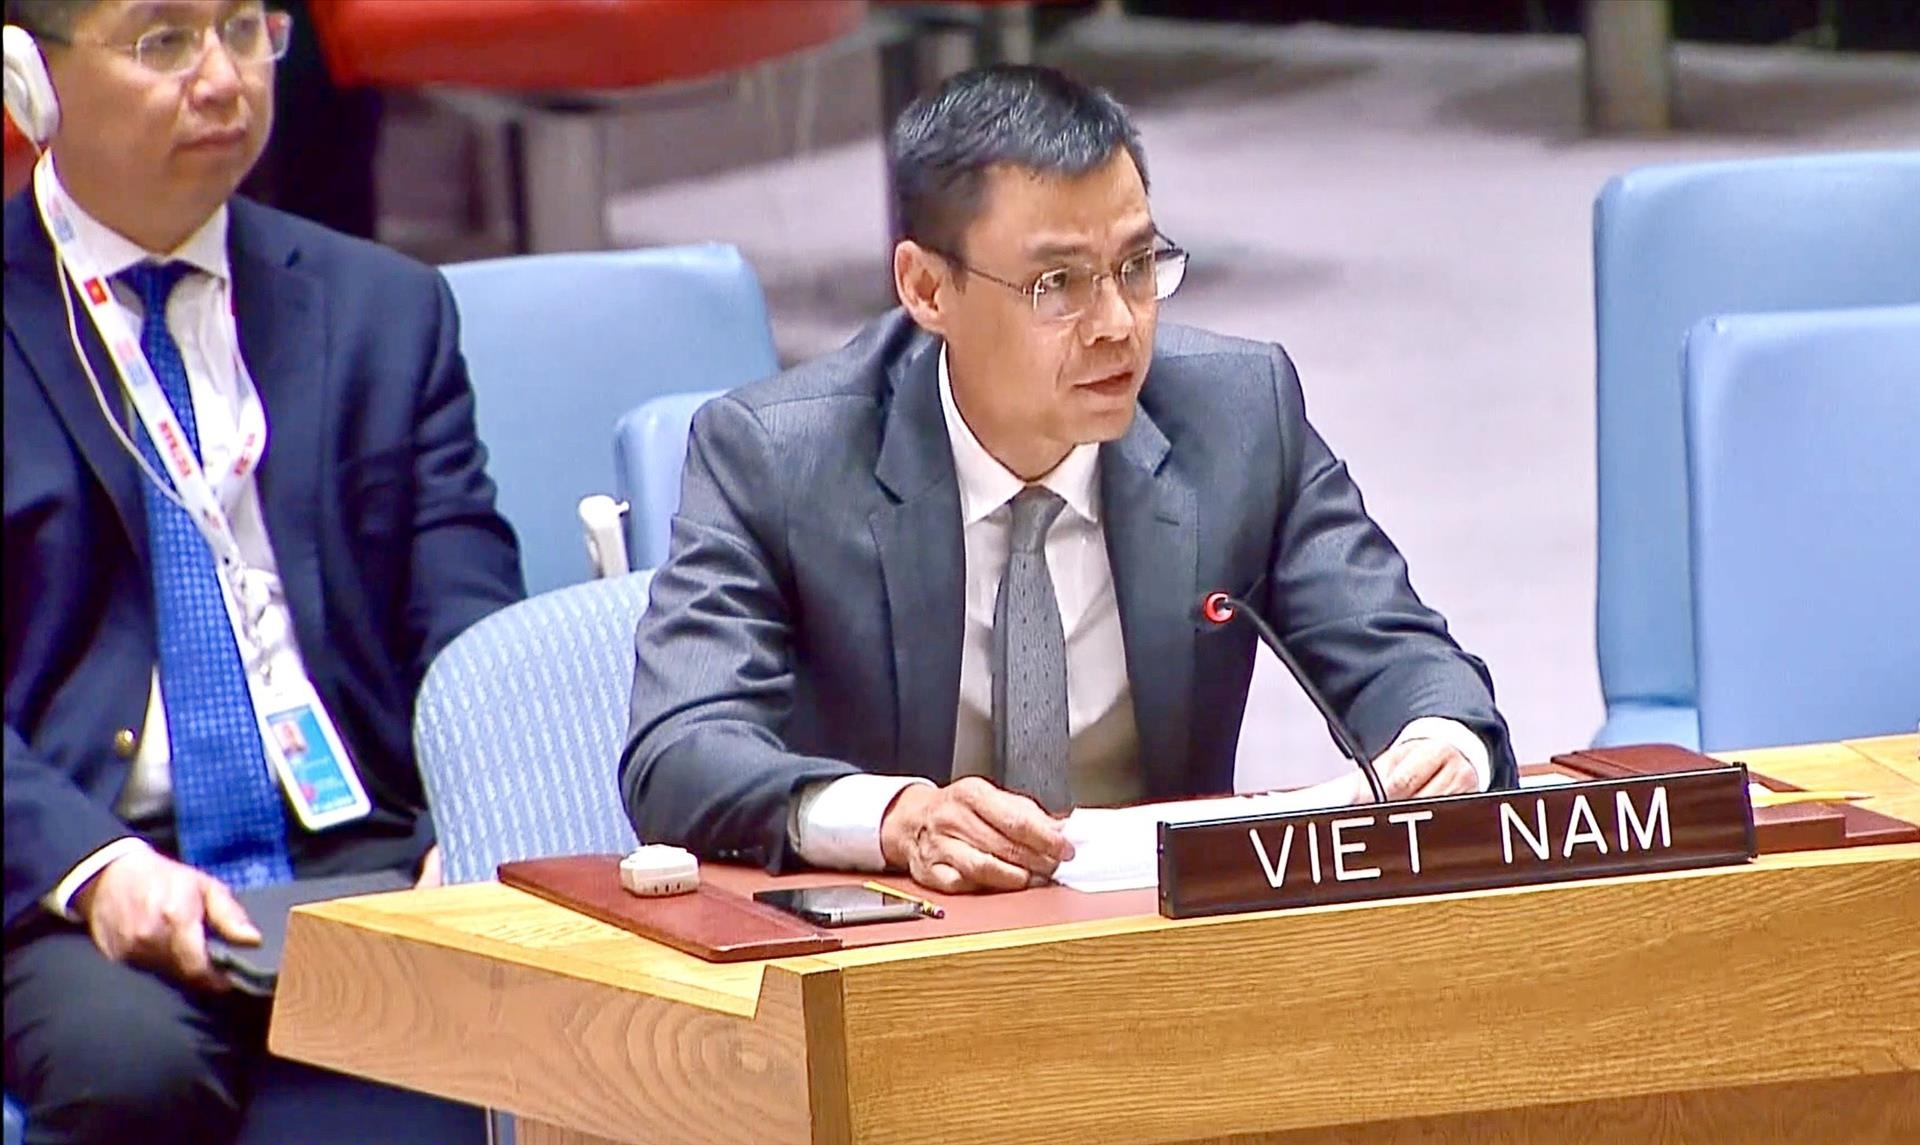 Вьетнам подчеркнул, что все страны несут ответственность за соблюдение Устава ООН и международного права